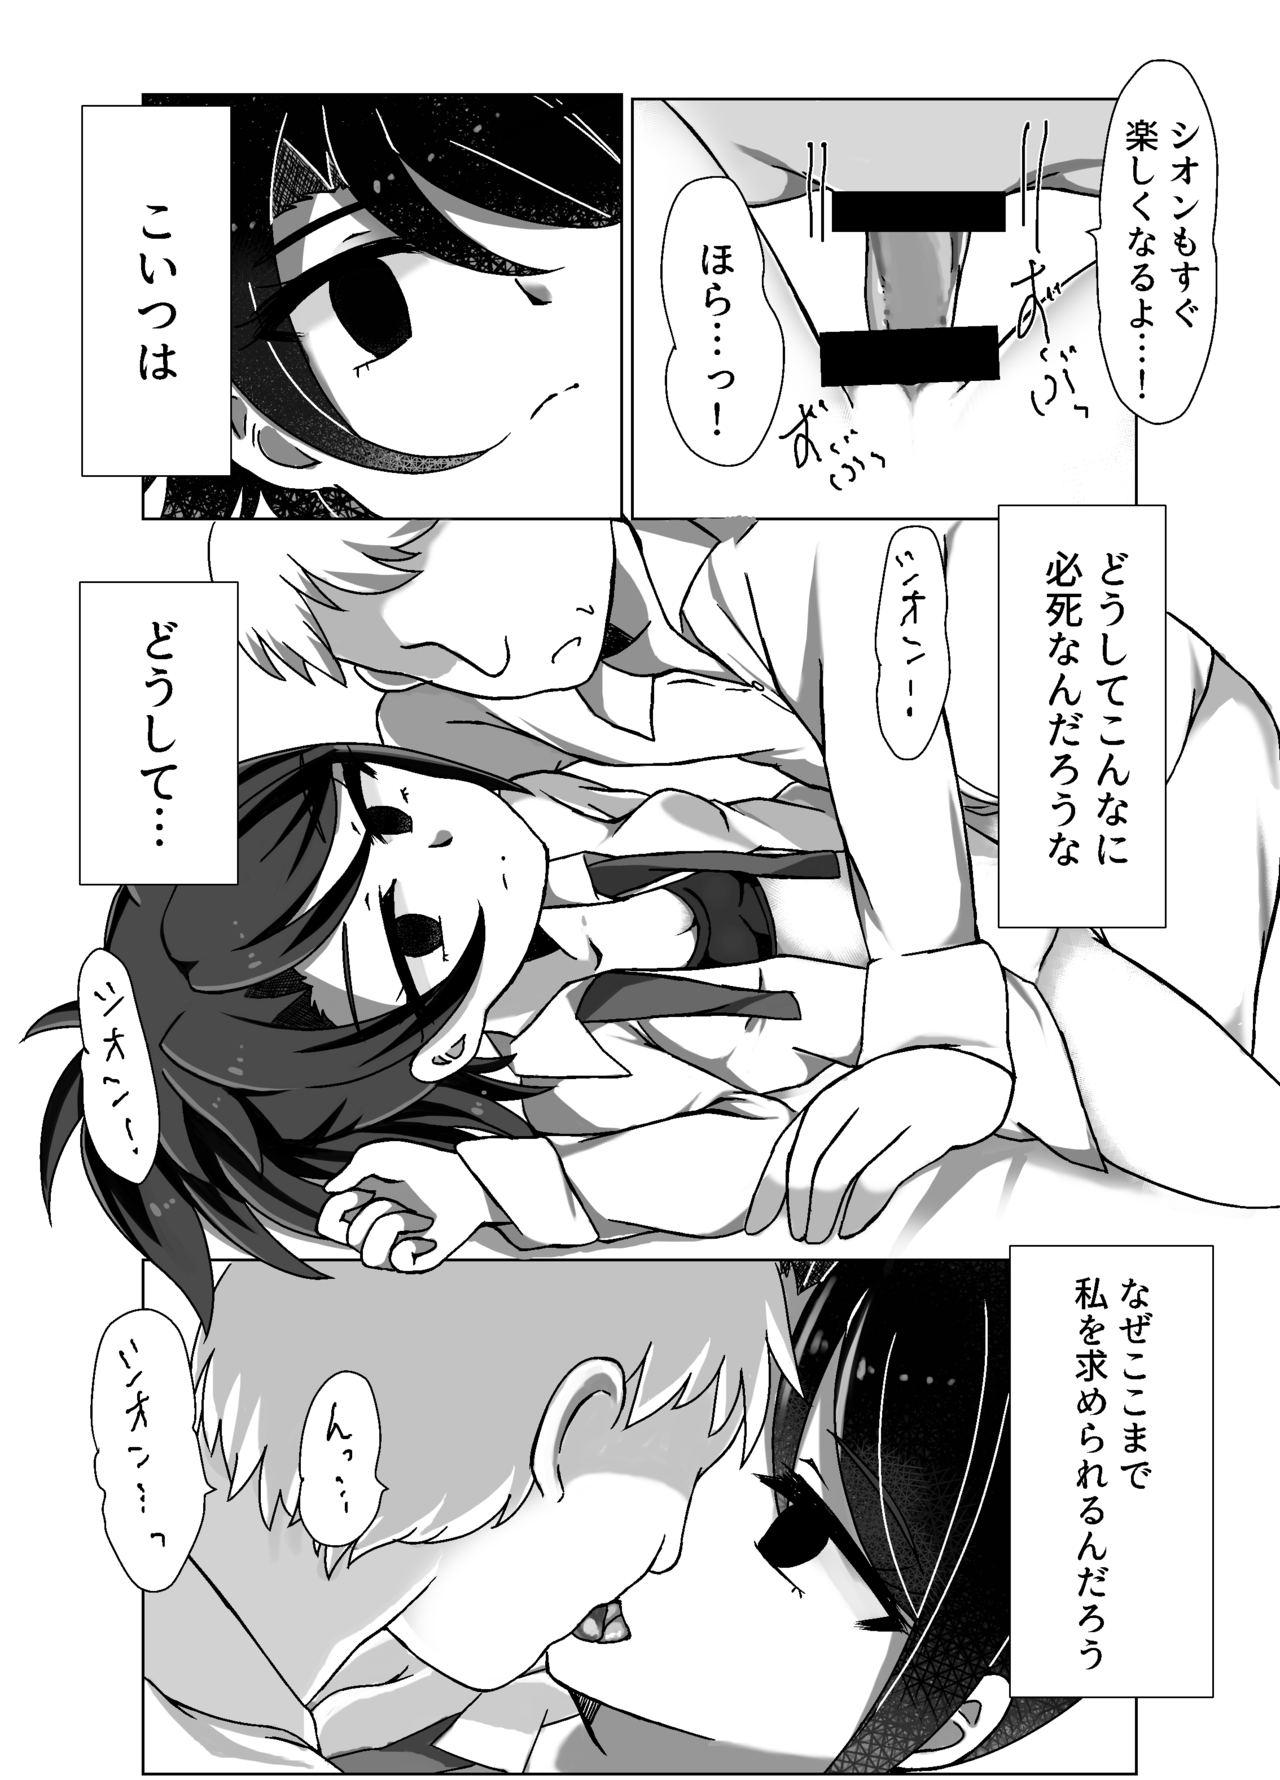 Perra Maguro Yariman Shion Sei no Yorokobi o Shiru - Pripara Gay Cumshots - Page 5